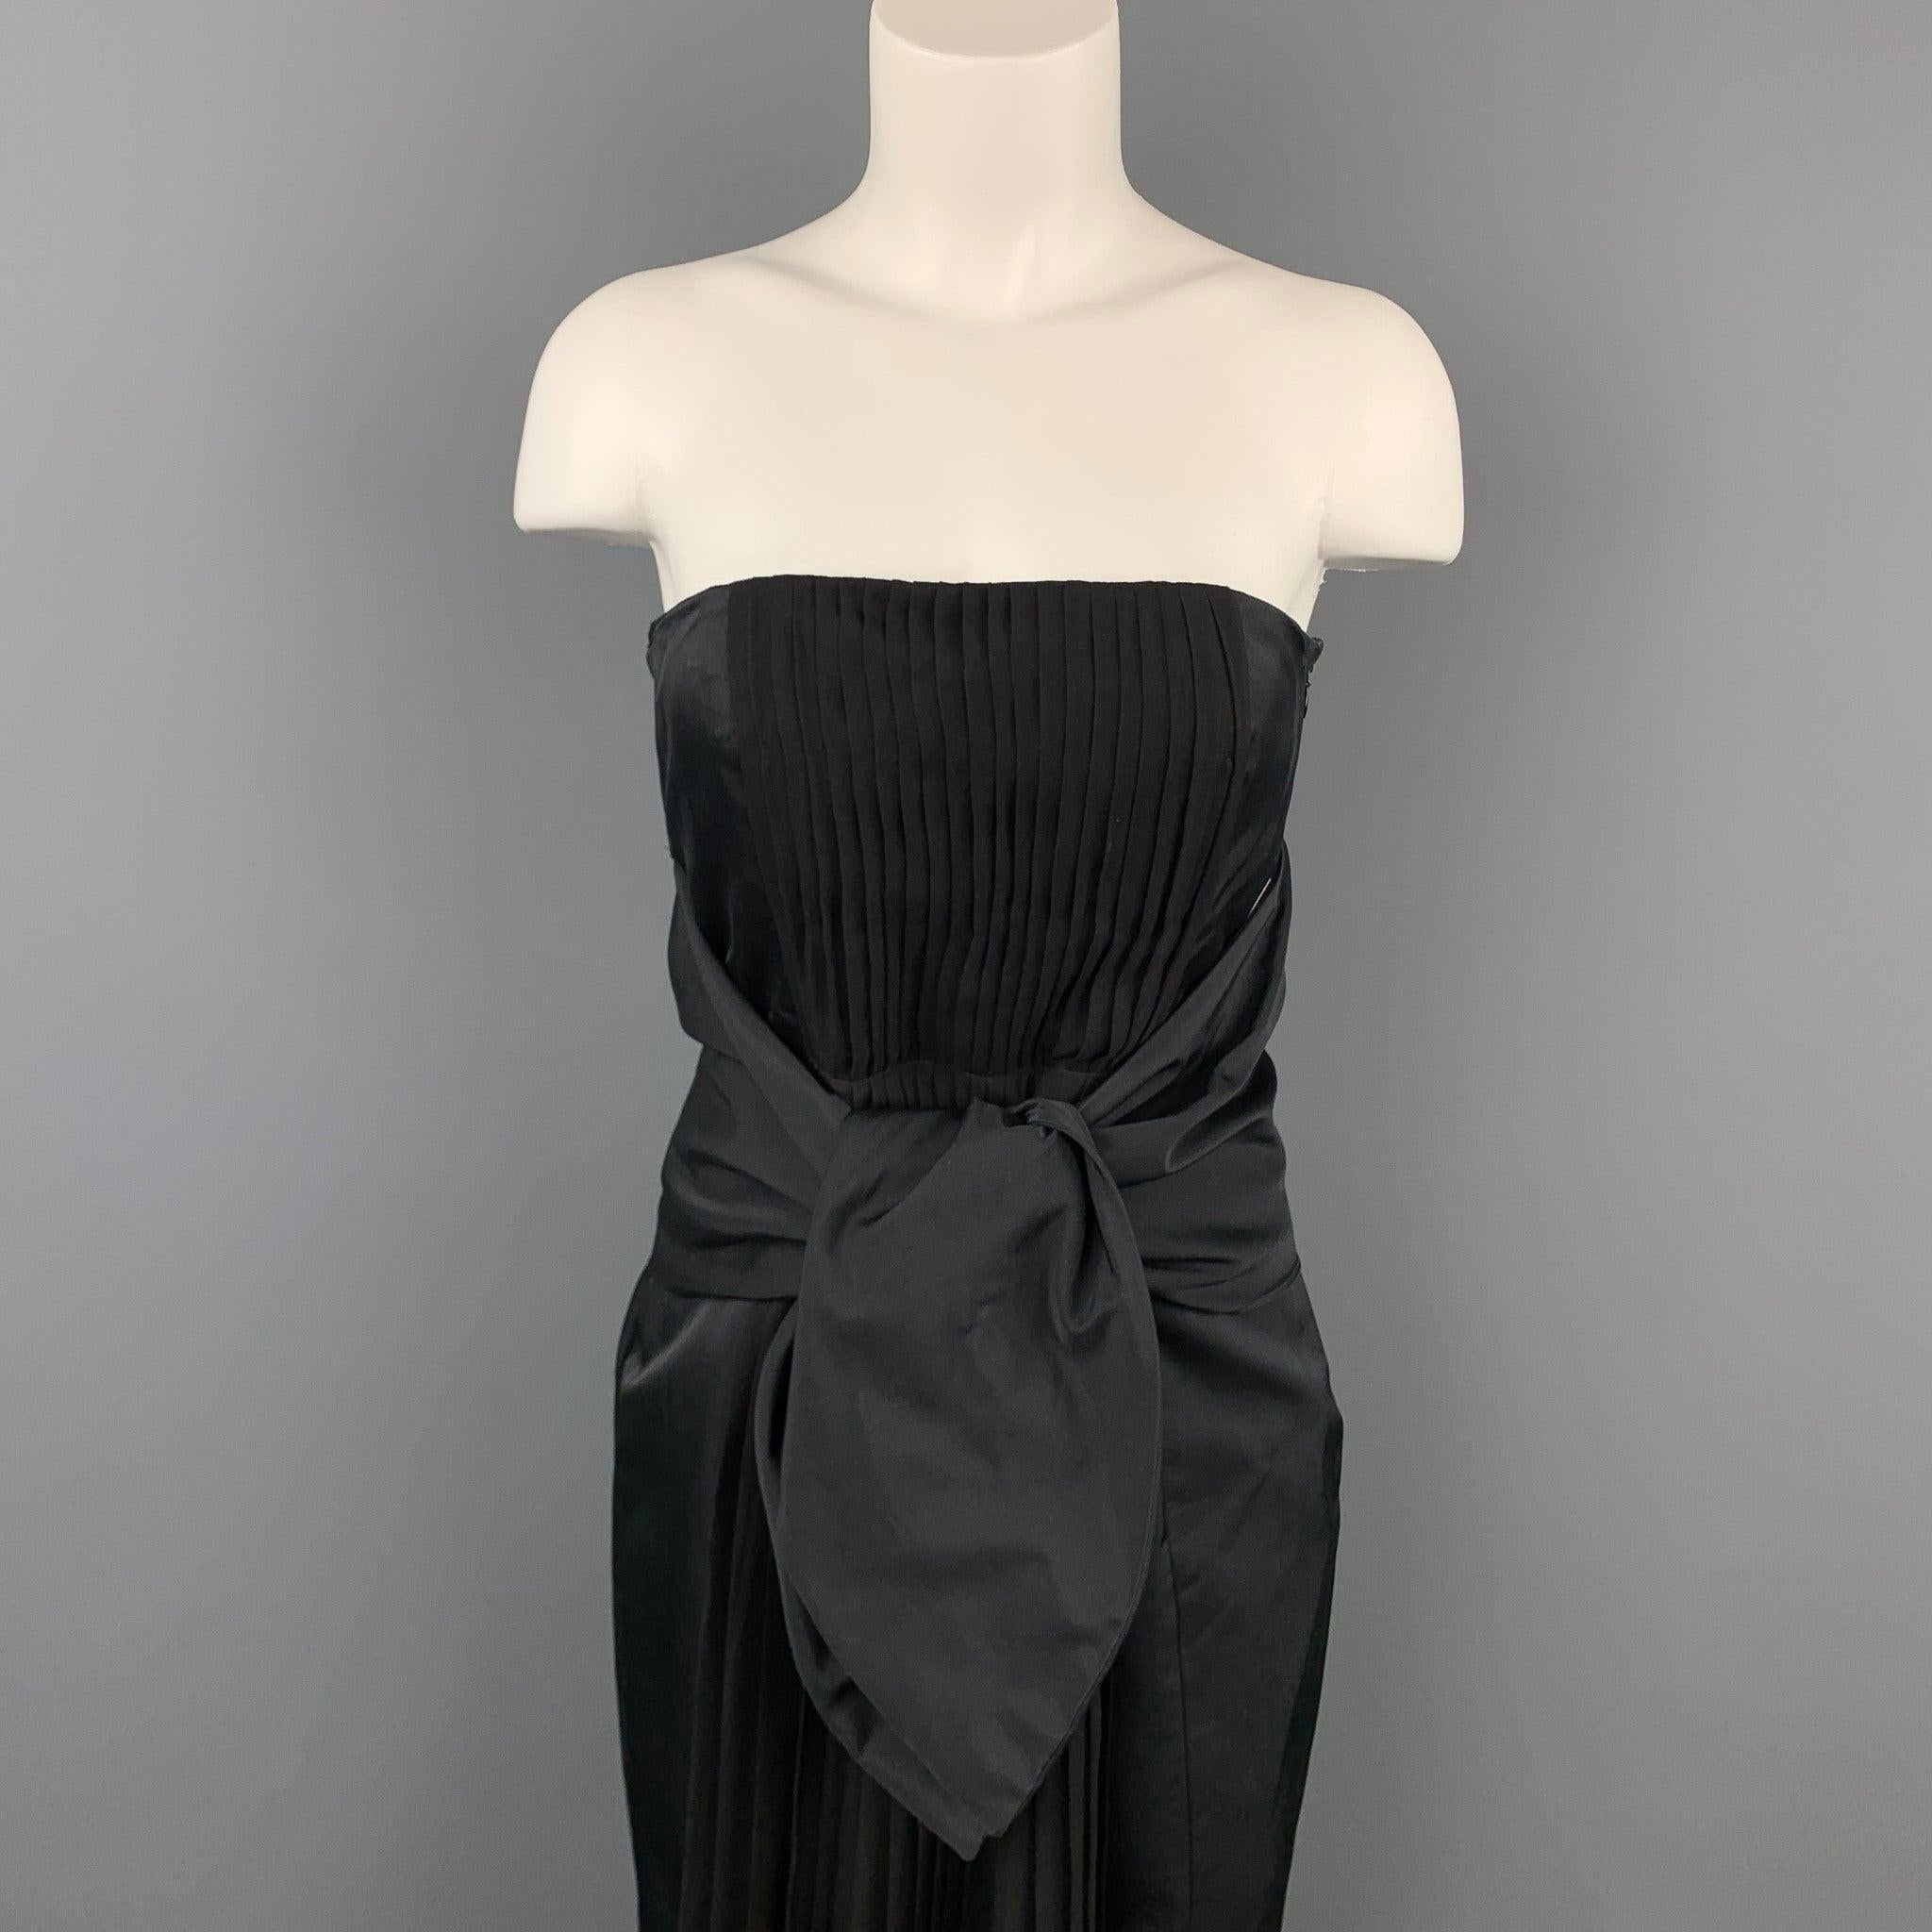 La robe bustier GIAMBATTISTA VALLI se présente dans un coton/soie plissé noir avec un style cocktail, un bustier intérieur, un large lien à la taille et une fermeture à glissière sur le côté. Fabriqué en Italie.
Etat d'occasion. 

Marqué :  42 / S